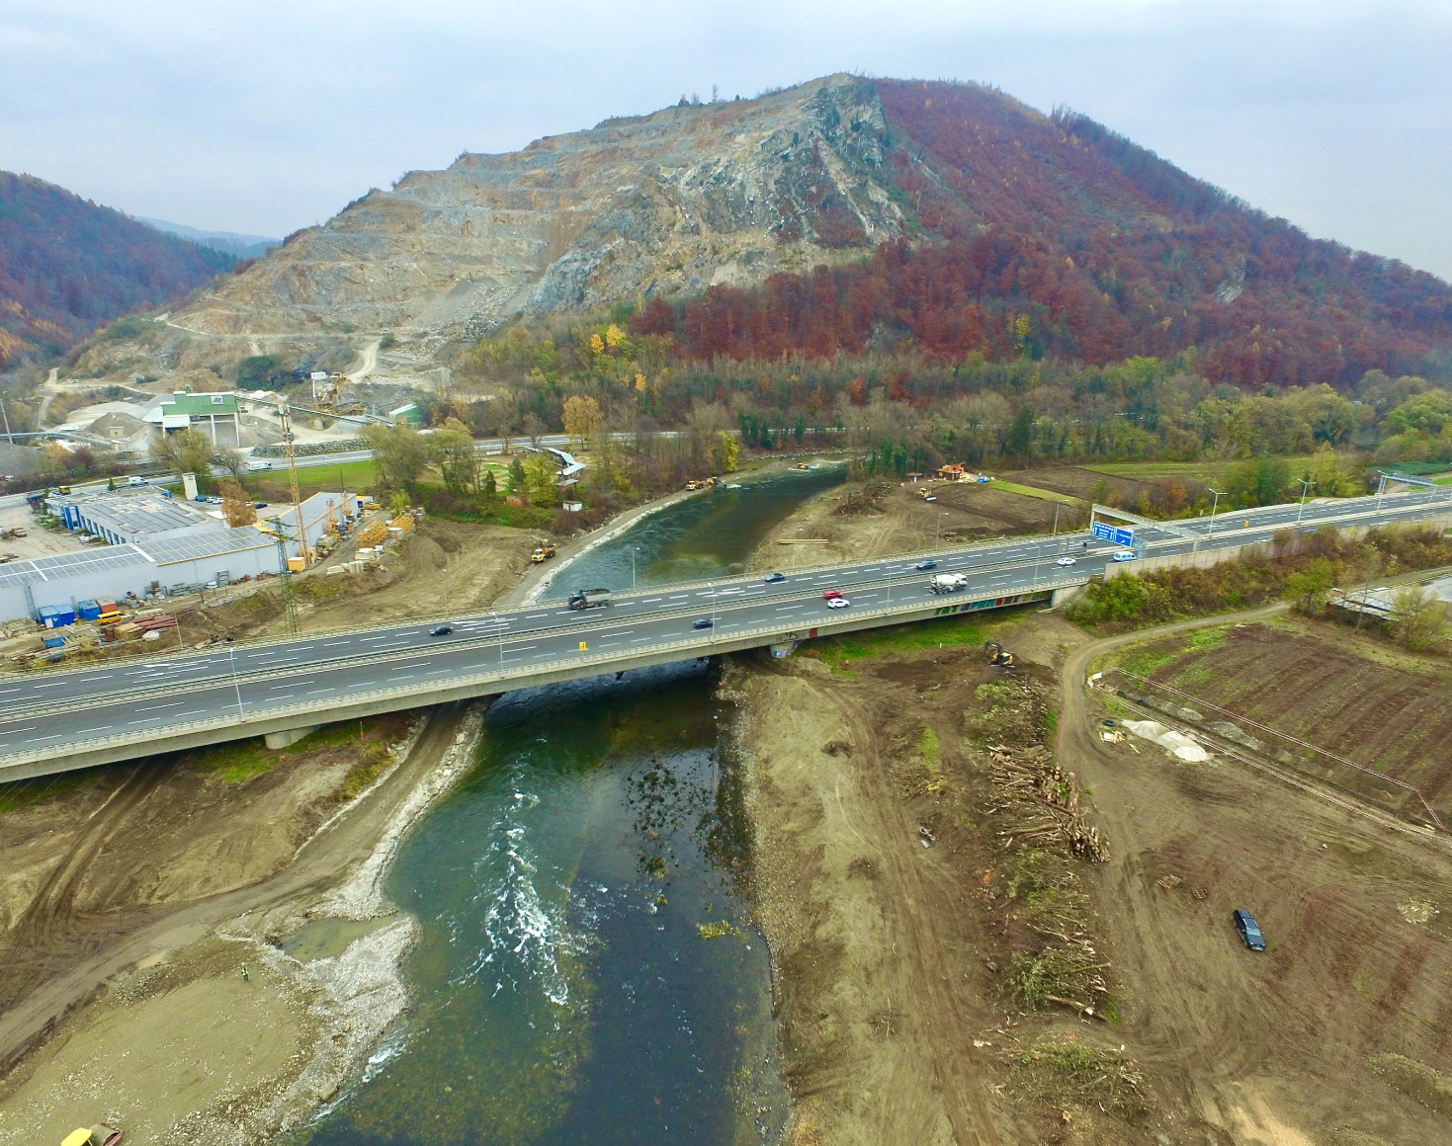 Luftaufnahme der Frühphase der Baustelle am Murkraftwerk Gratkorn. Das Bild zeigt die Bauvorbereitung mit einer Autobahnbrücke über den Fluss Mur, umgeben von entwaldeten Hängen und Anfangsarbeiten auf dem weitläufigen Gelände.